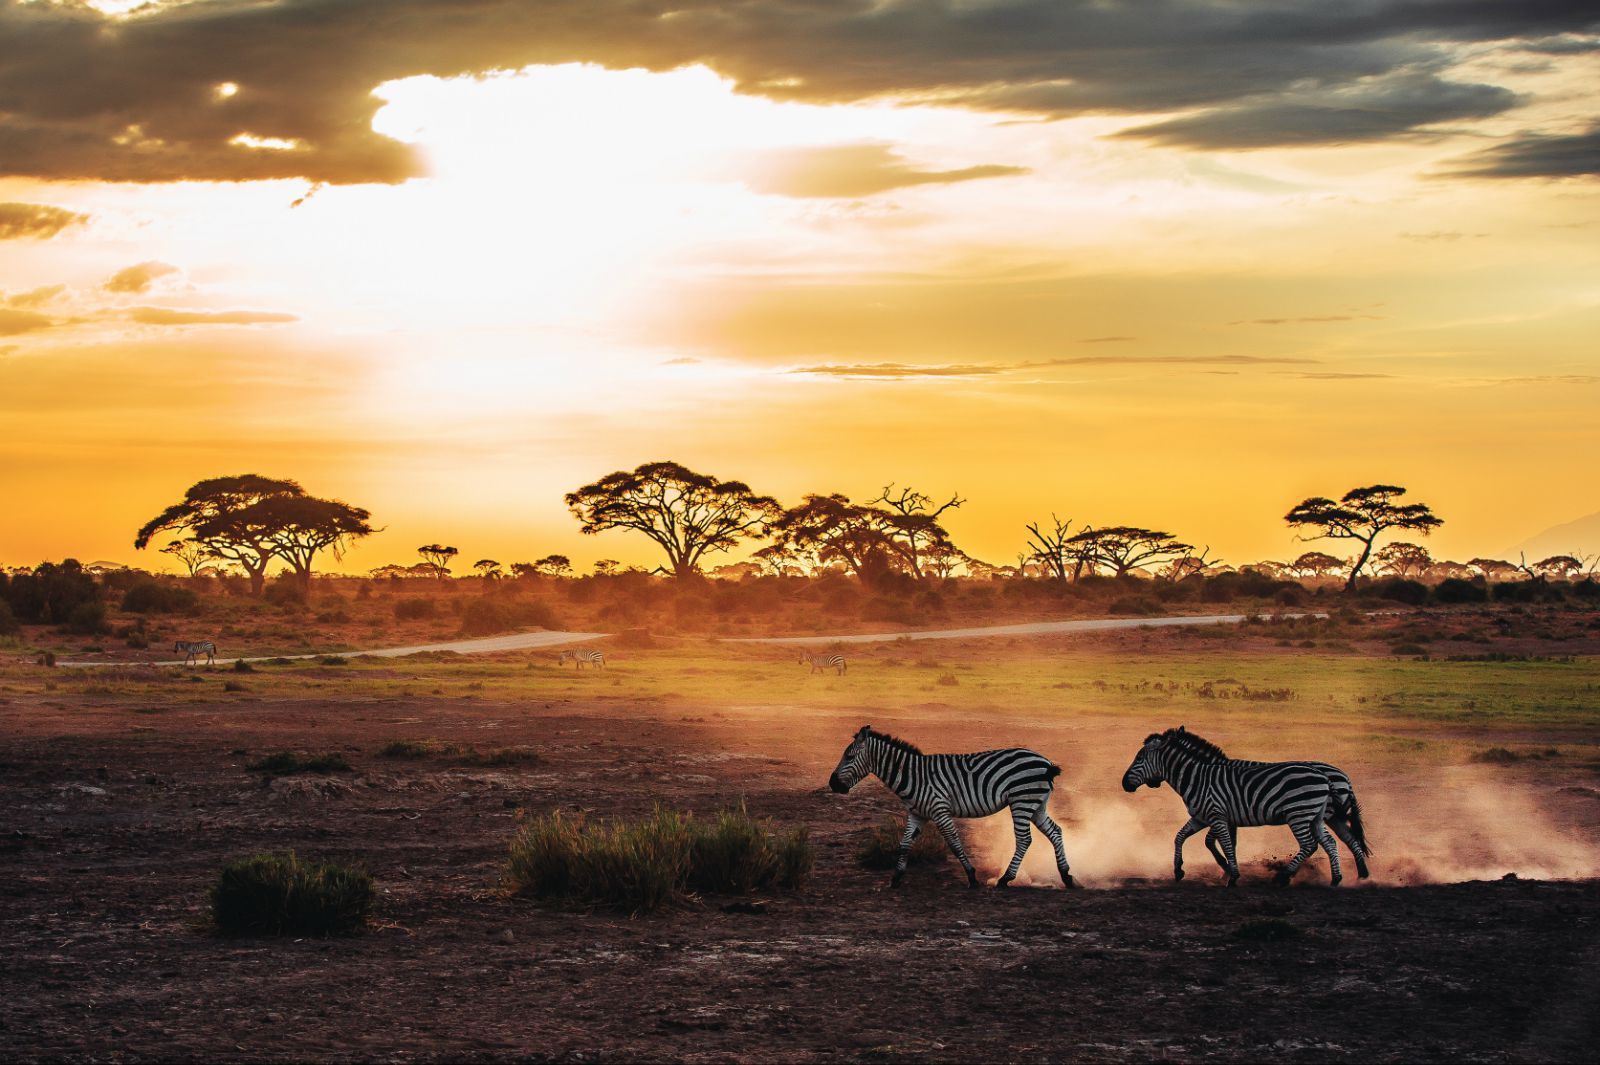 肯尼亚动物大迁徙摄影创作 13 天之旅_专业摄影团|摄影创作团|旅行摄影团-我的摄影我的团[官网]